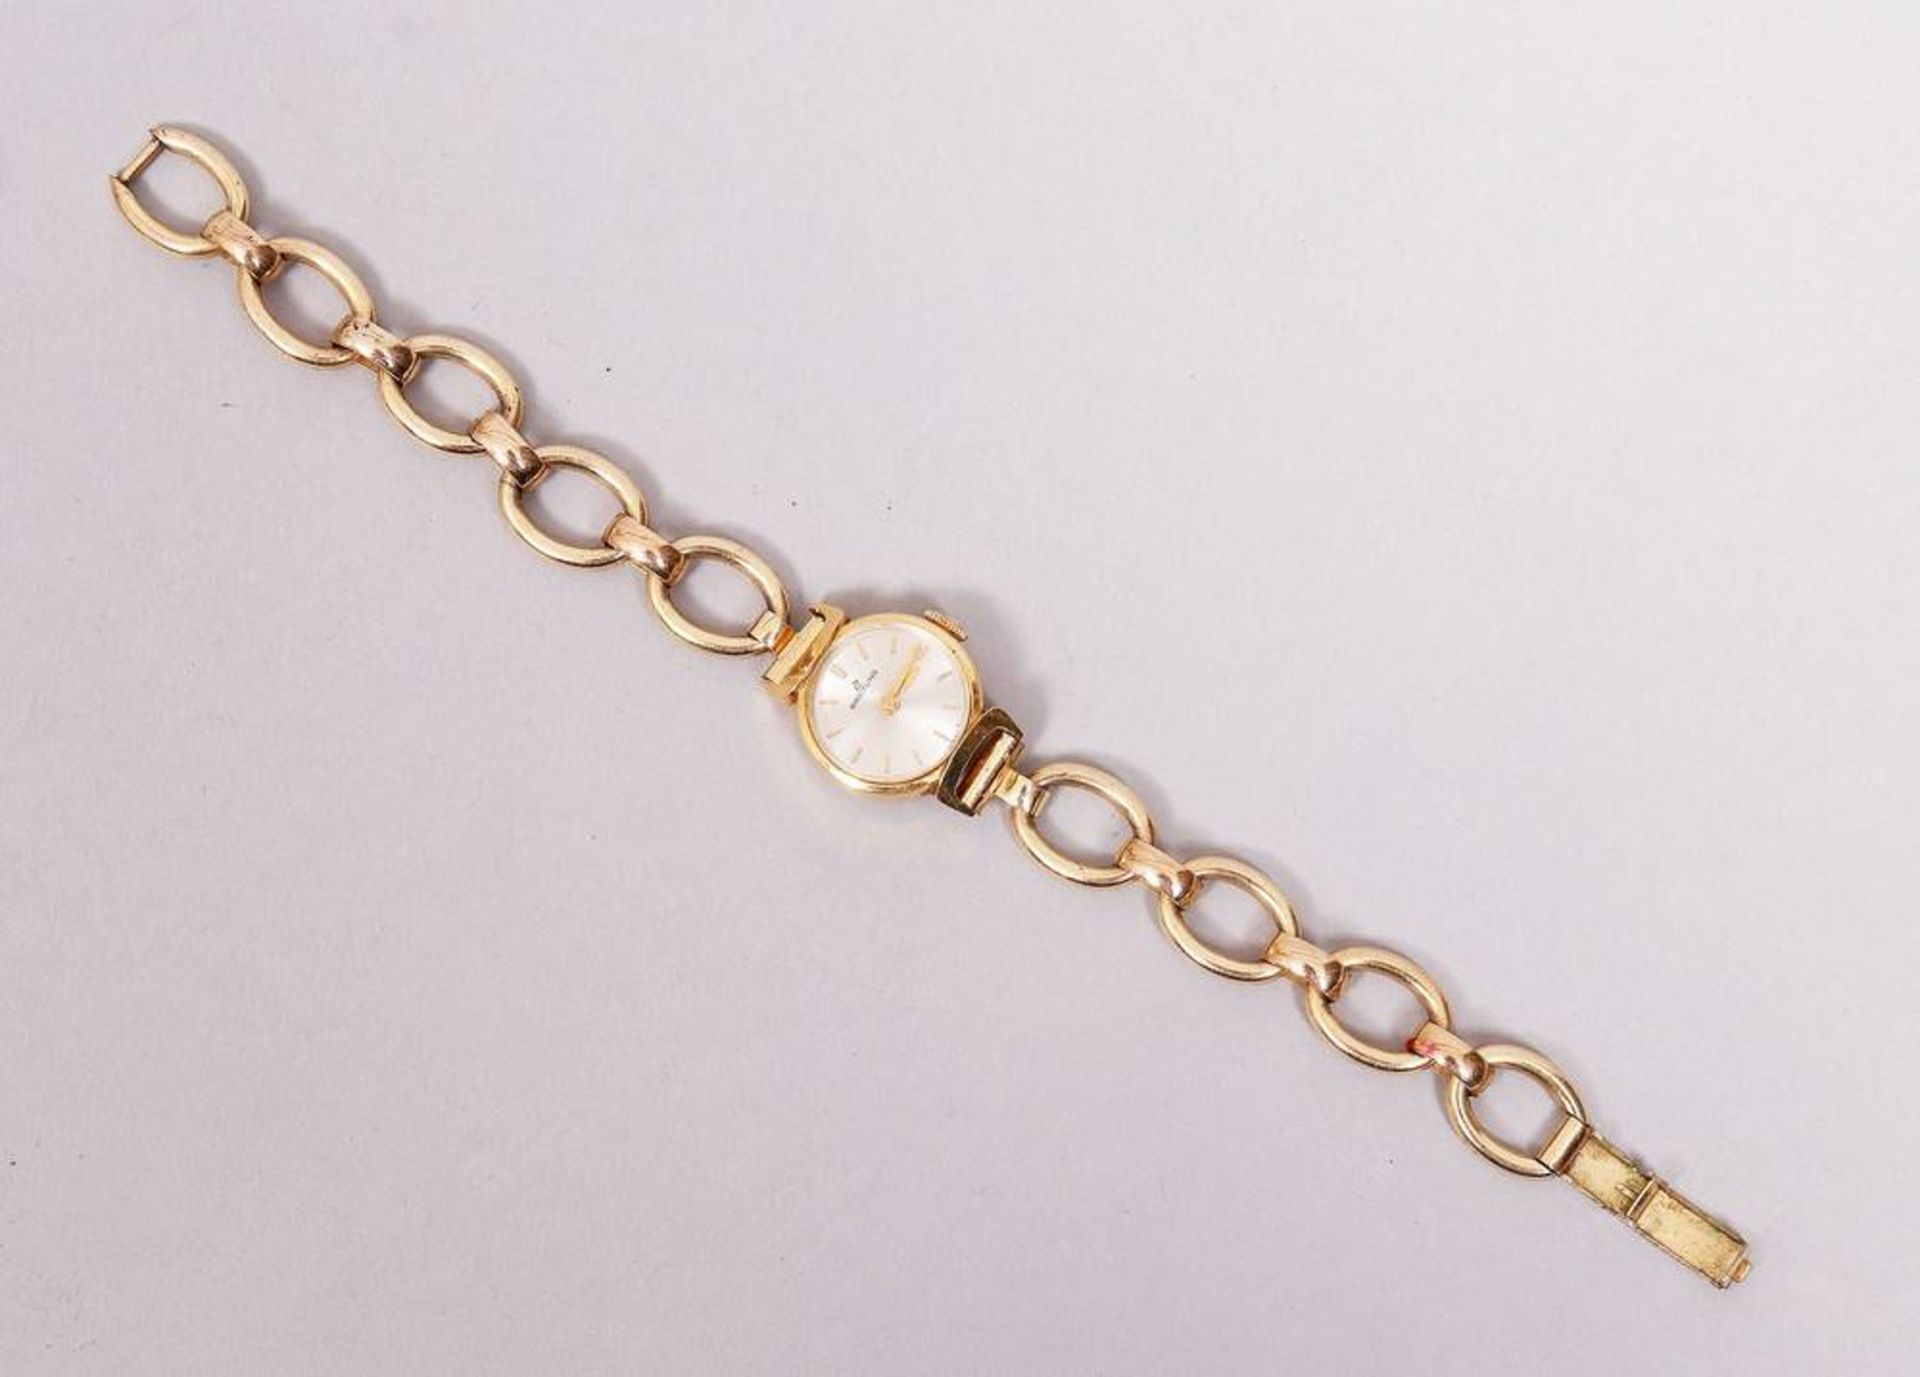 Breitling women's wristwatch, 1960s